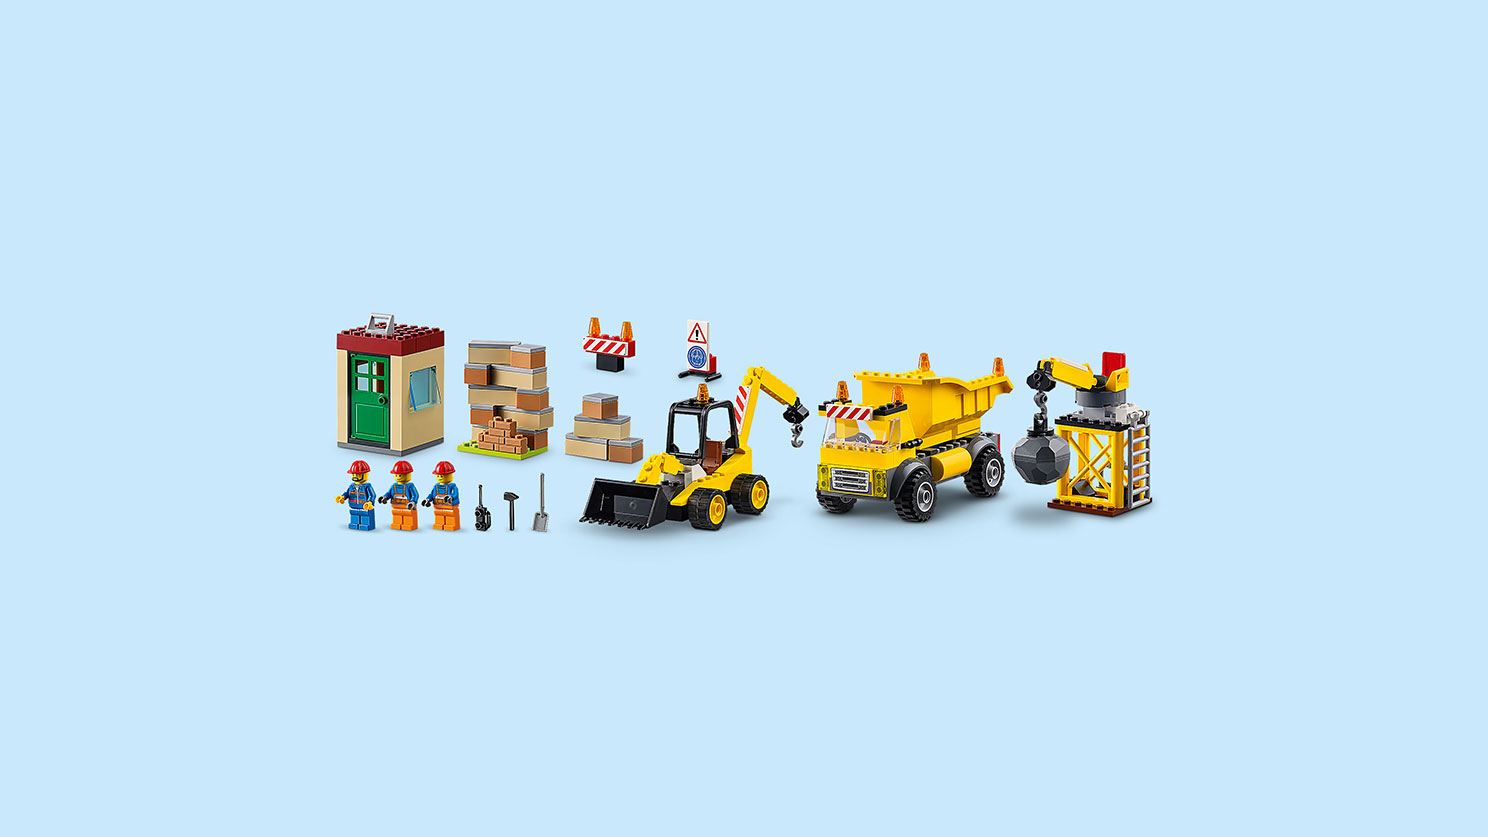 LEGO Juniors. Стройплощадка  